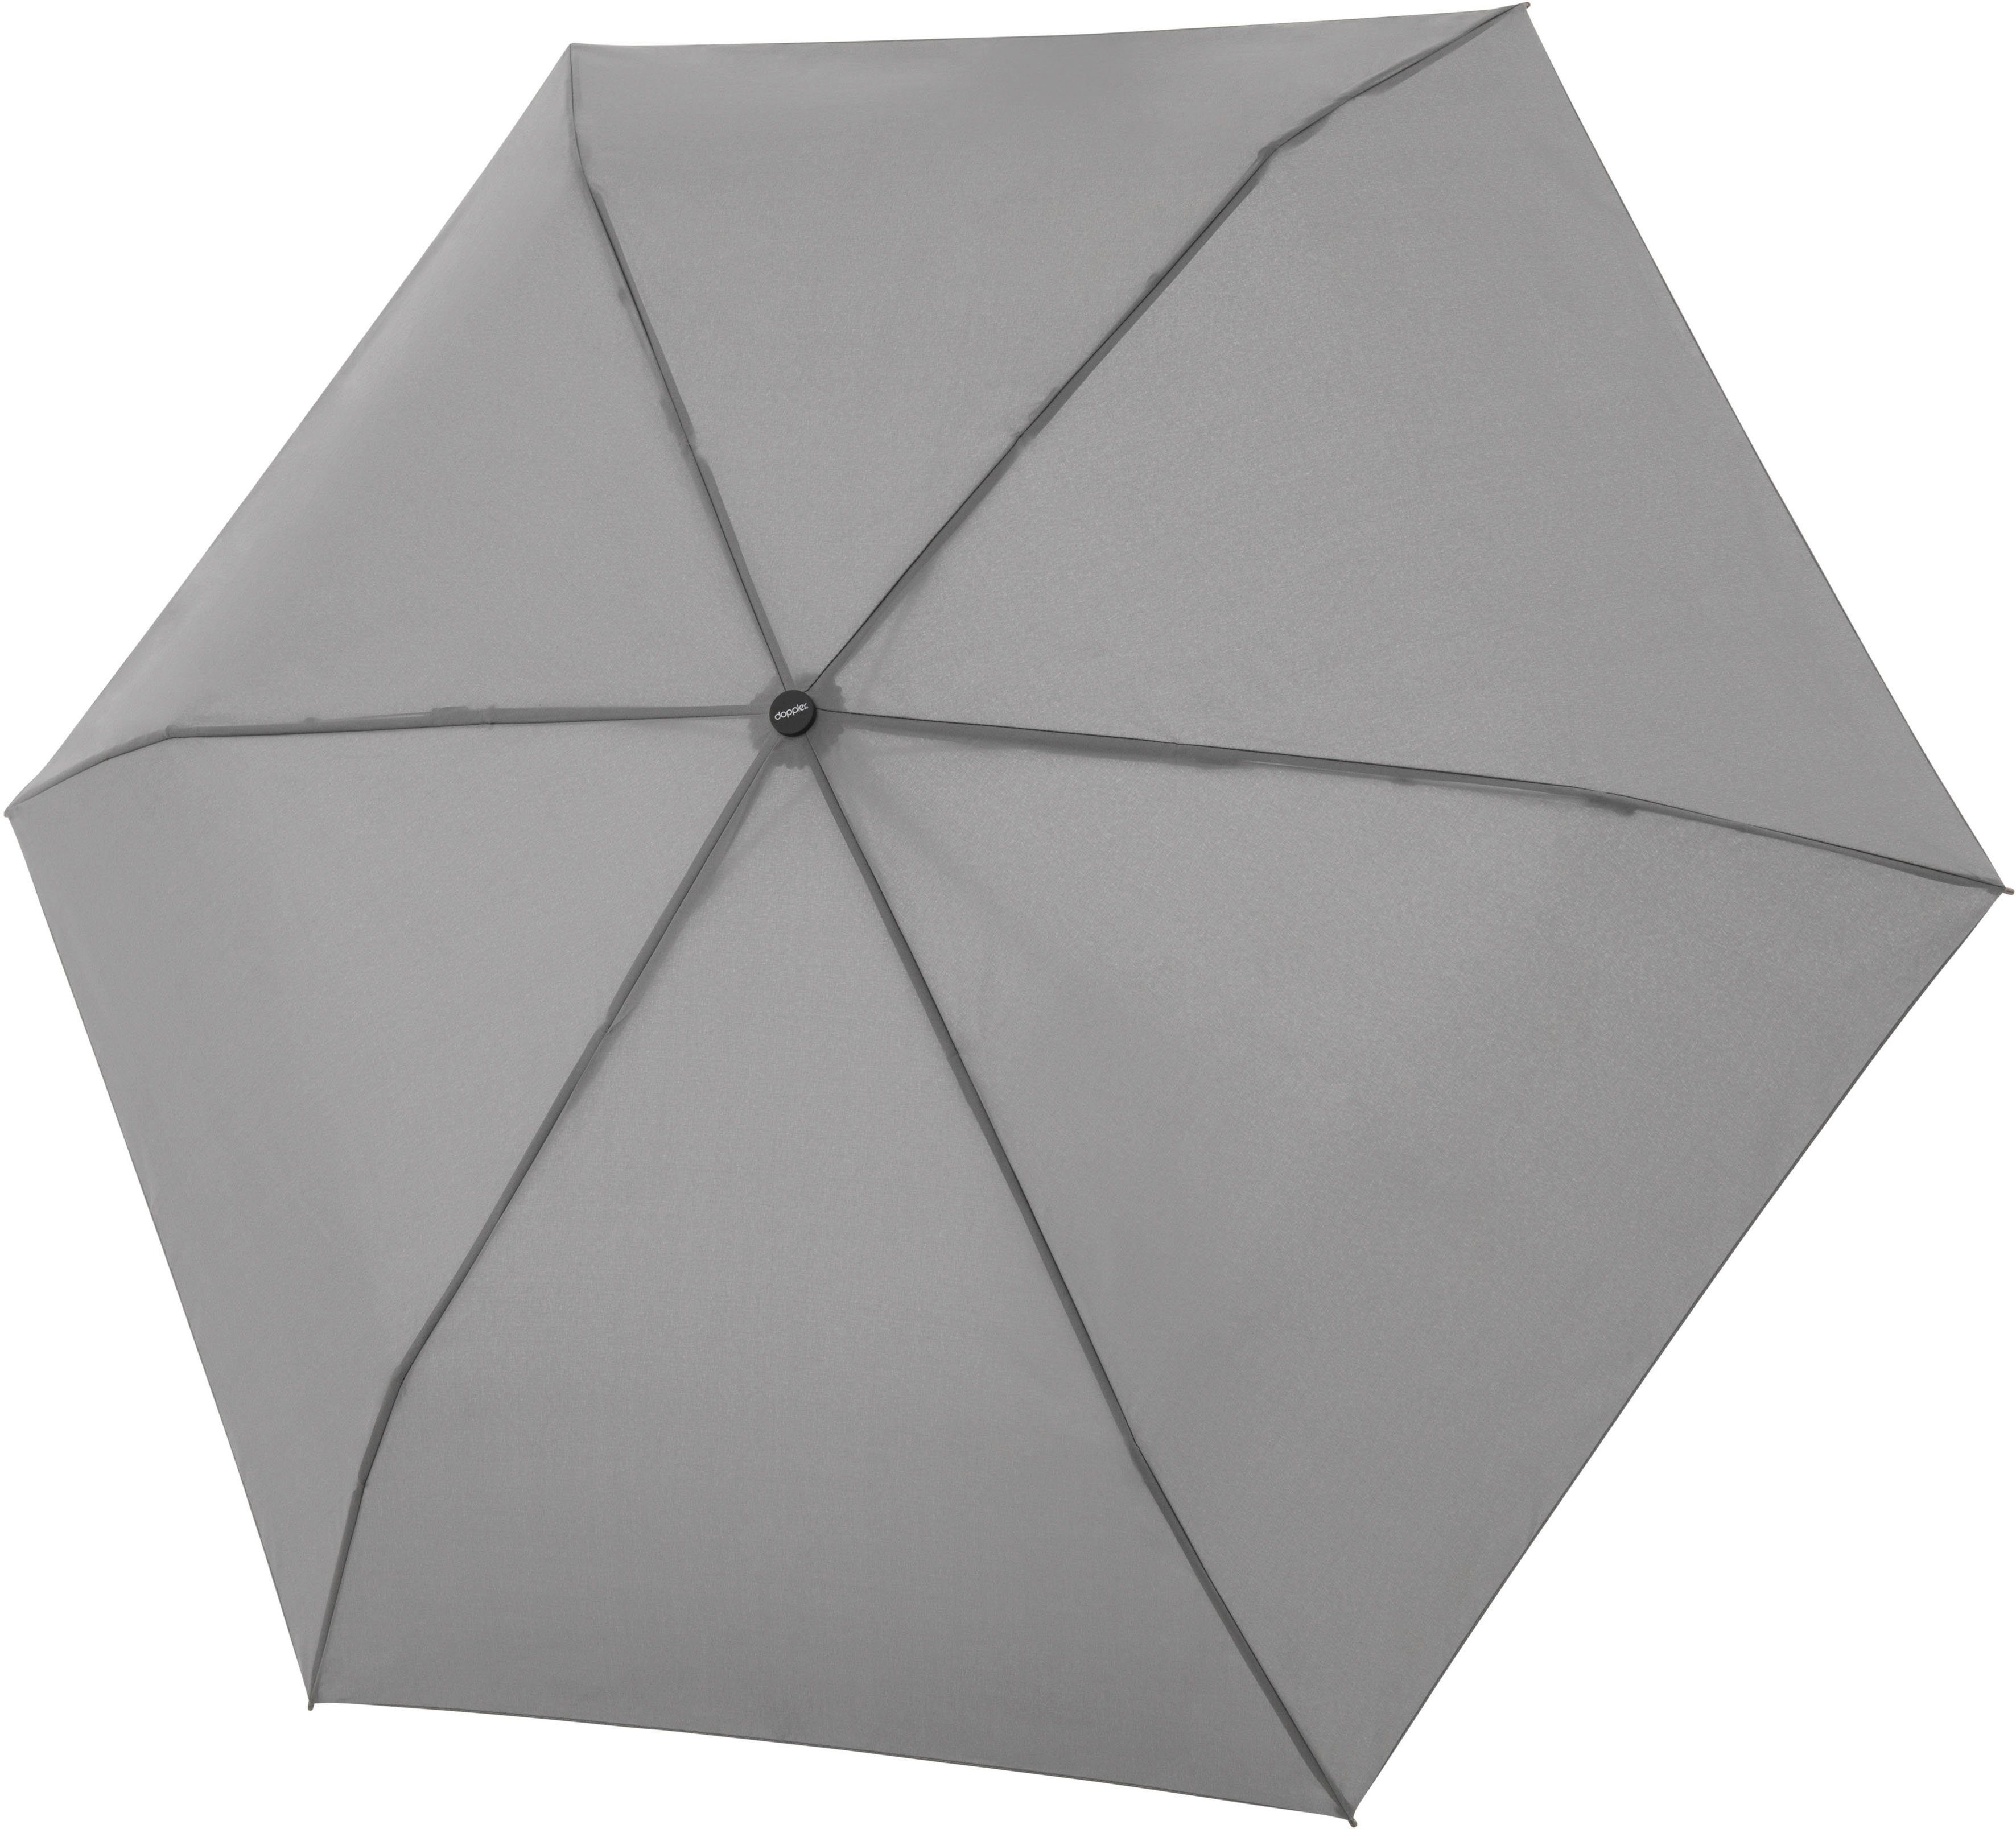 Taschenregenschirm Smart doppler® grey close uni,